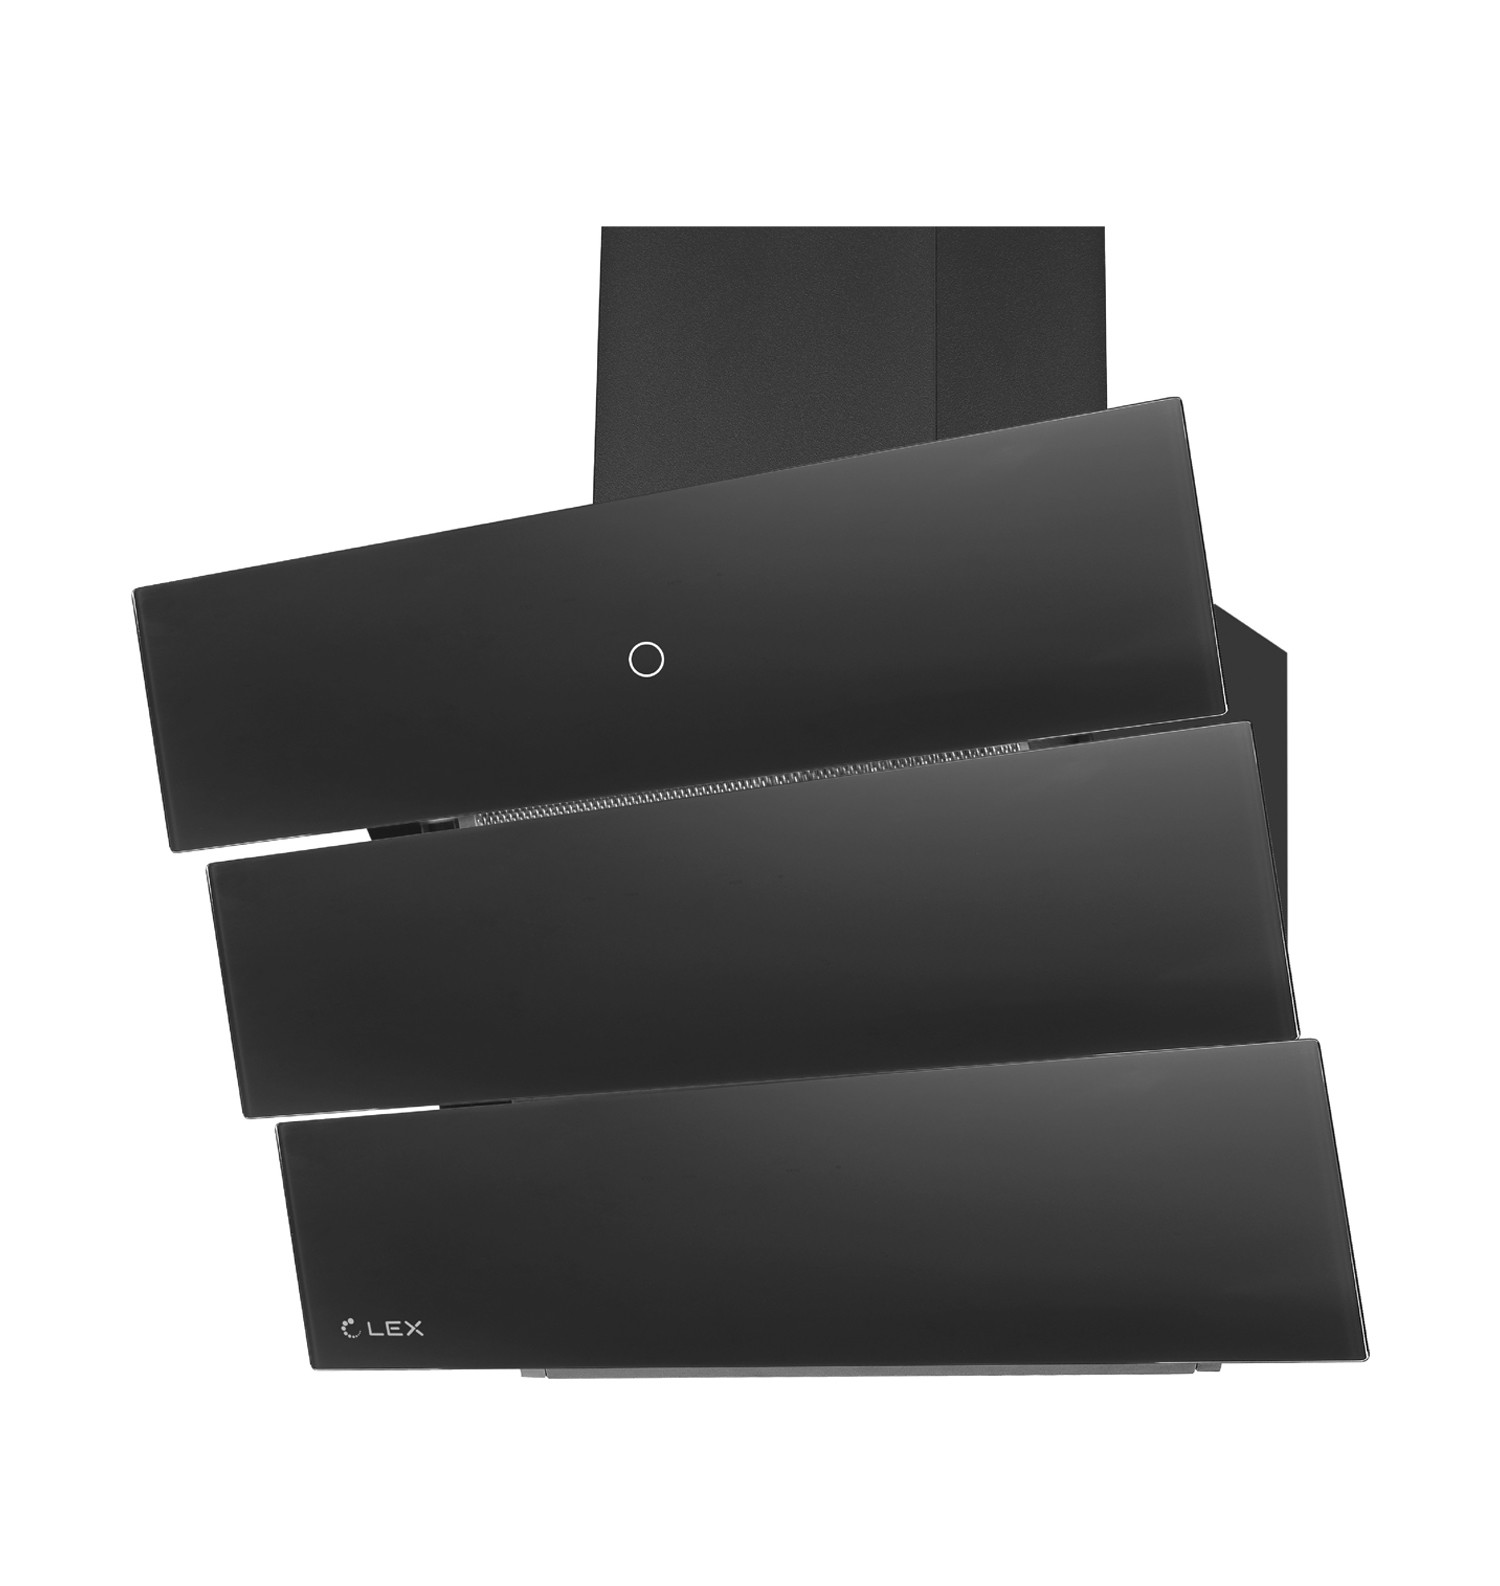 Вытяжка настенная LEX RIO GS 600  1М Black термос relaxika стикерпак красоты россии 750ml black r101 750 2